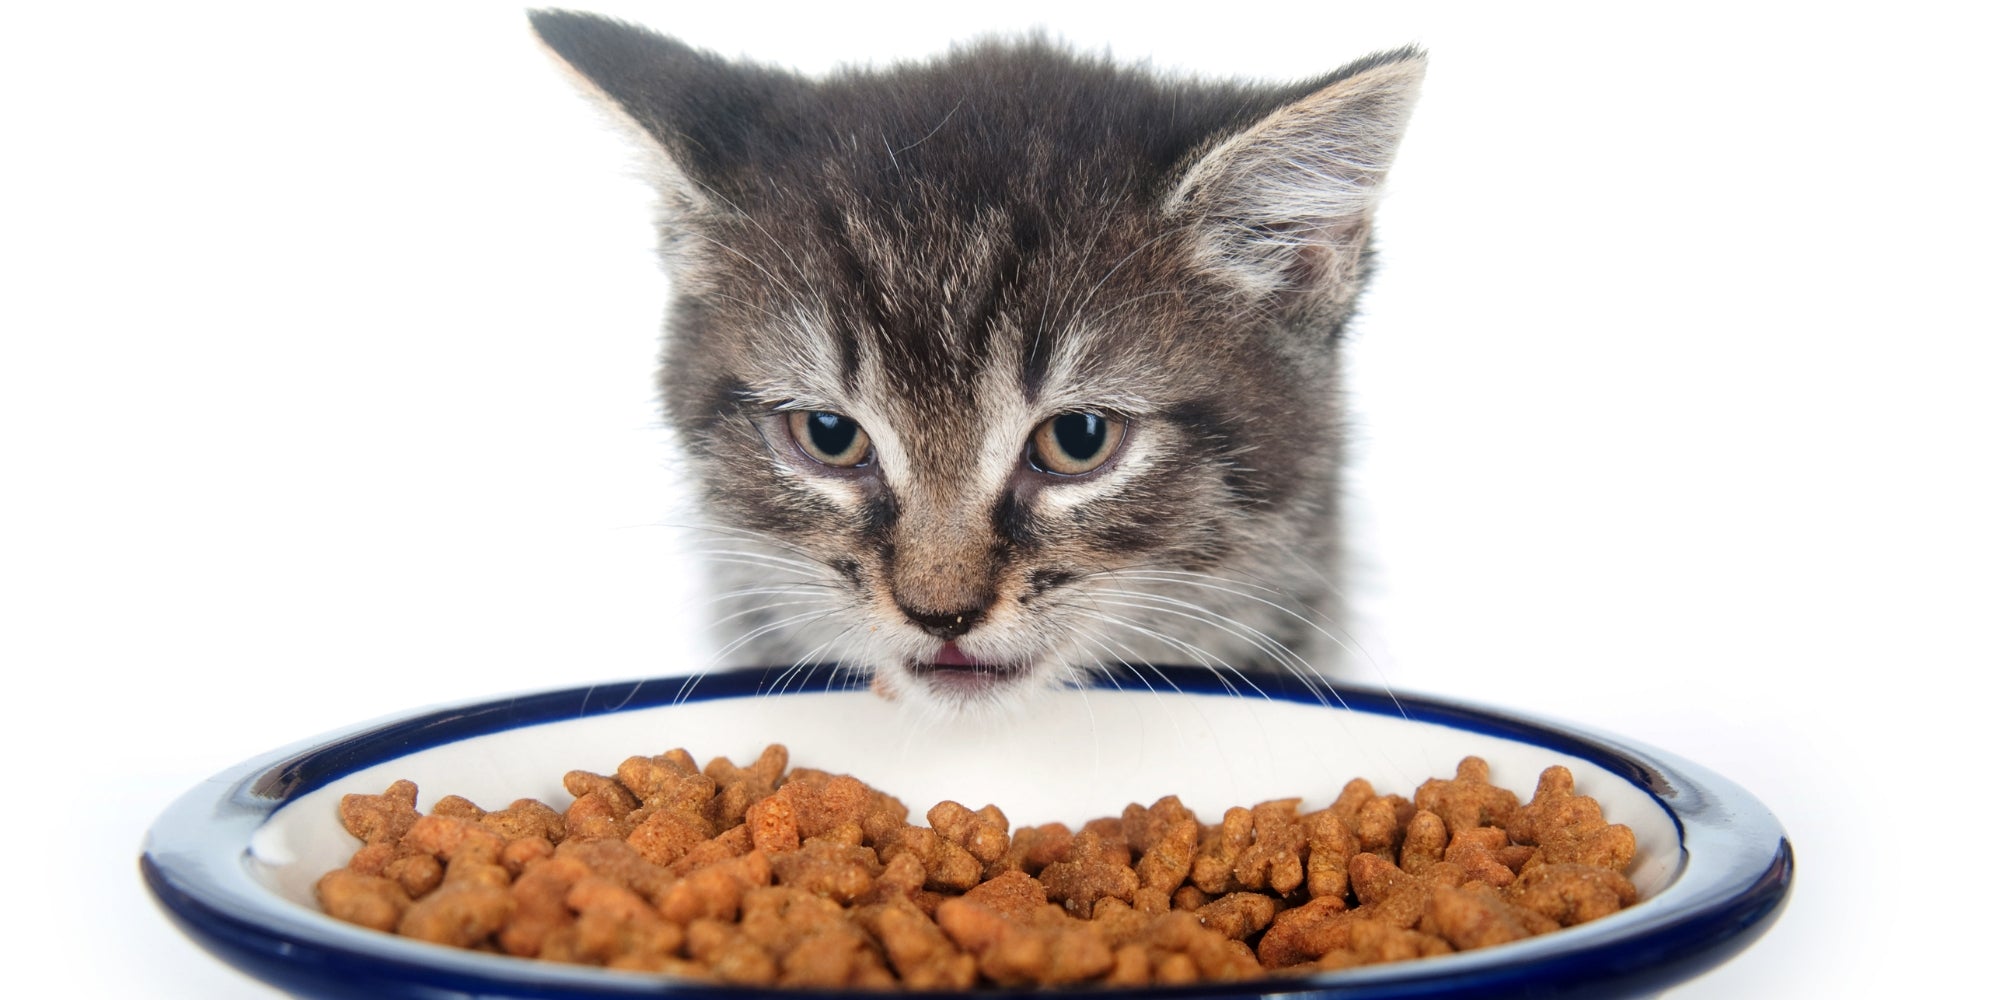 Un gato examinando atentamente su plato de comida